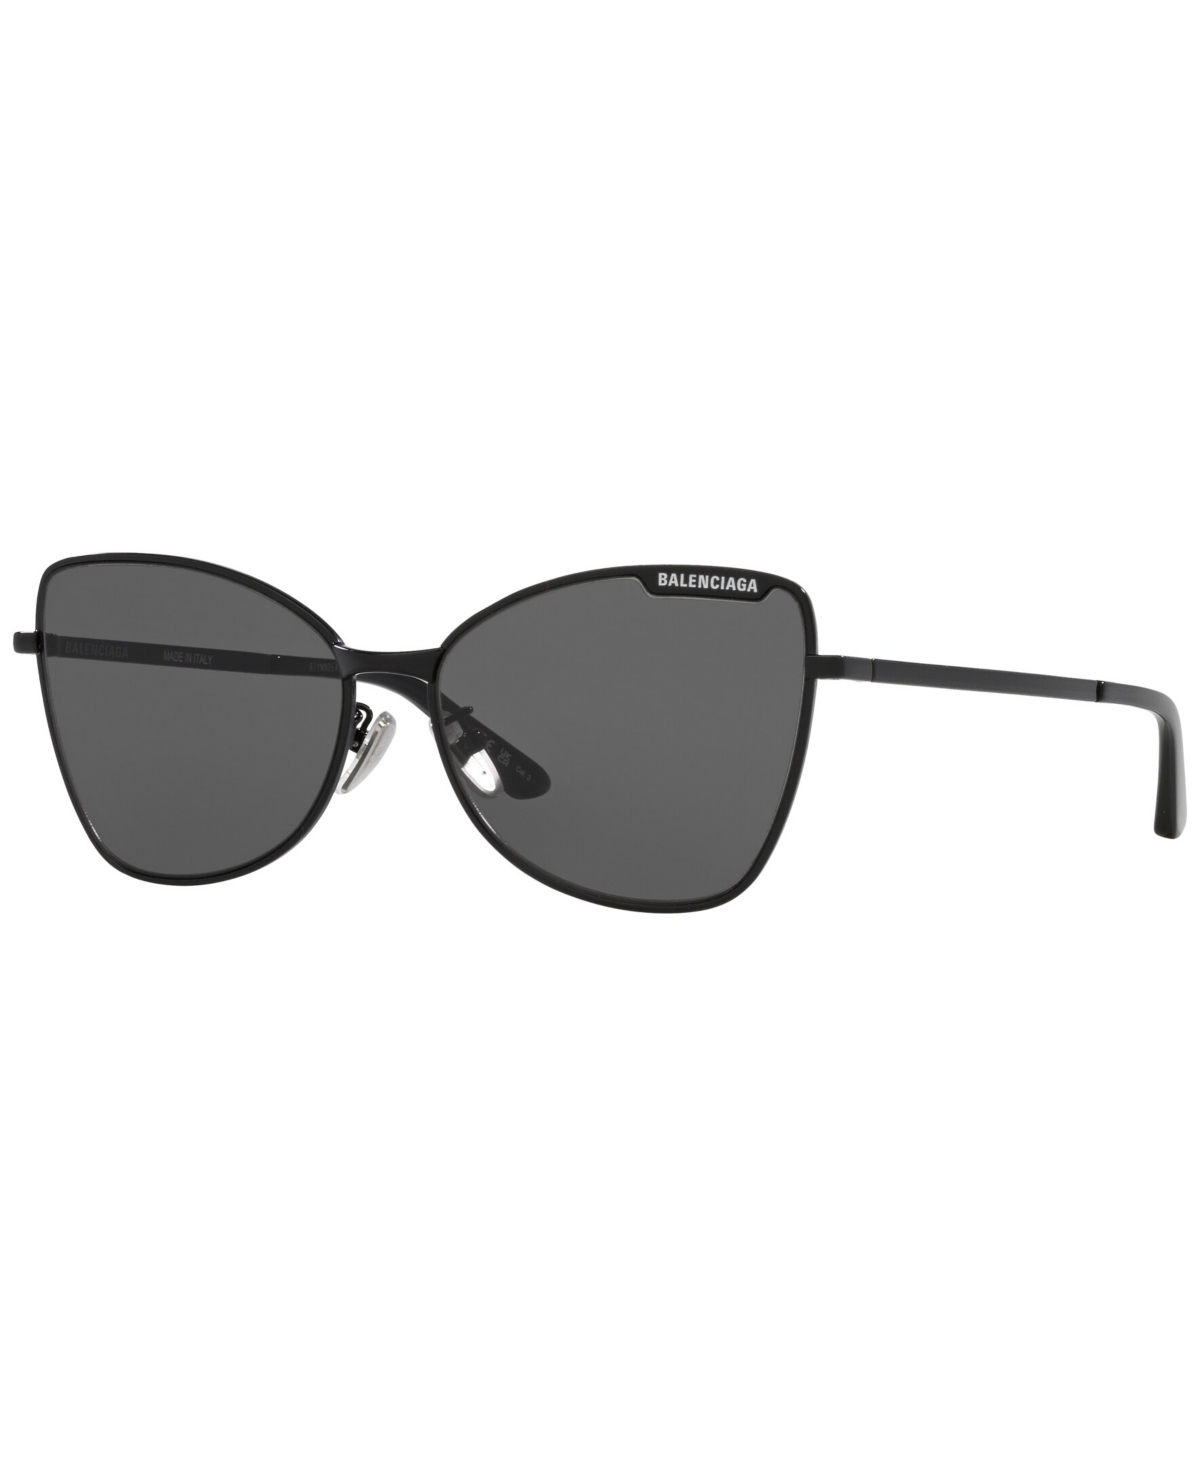 Balenciaga Women's Sunglasses, Bb0278s In Black